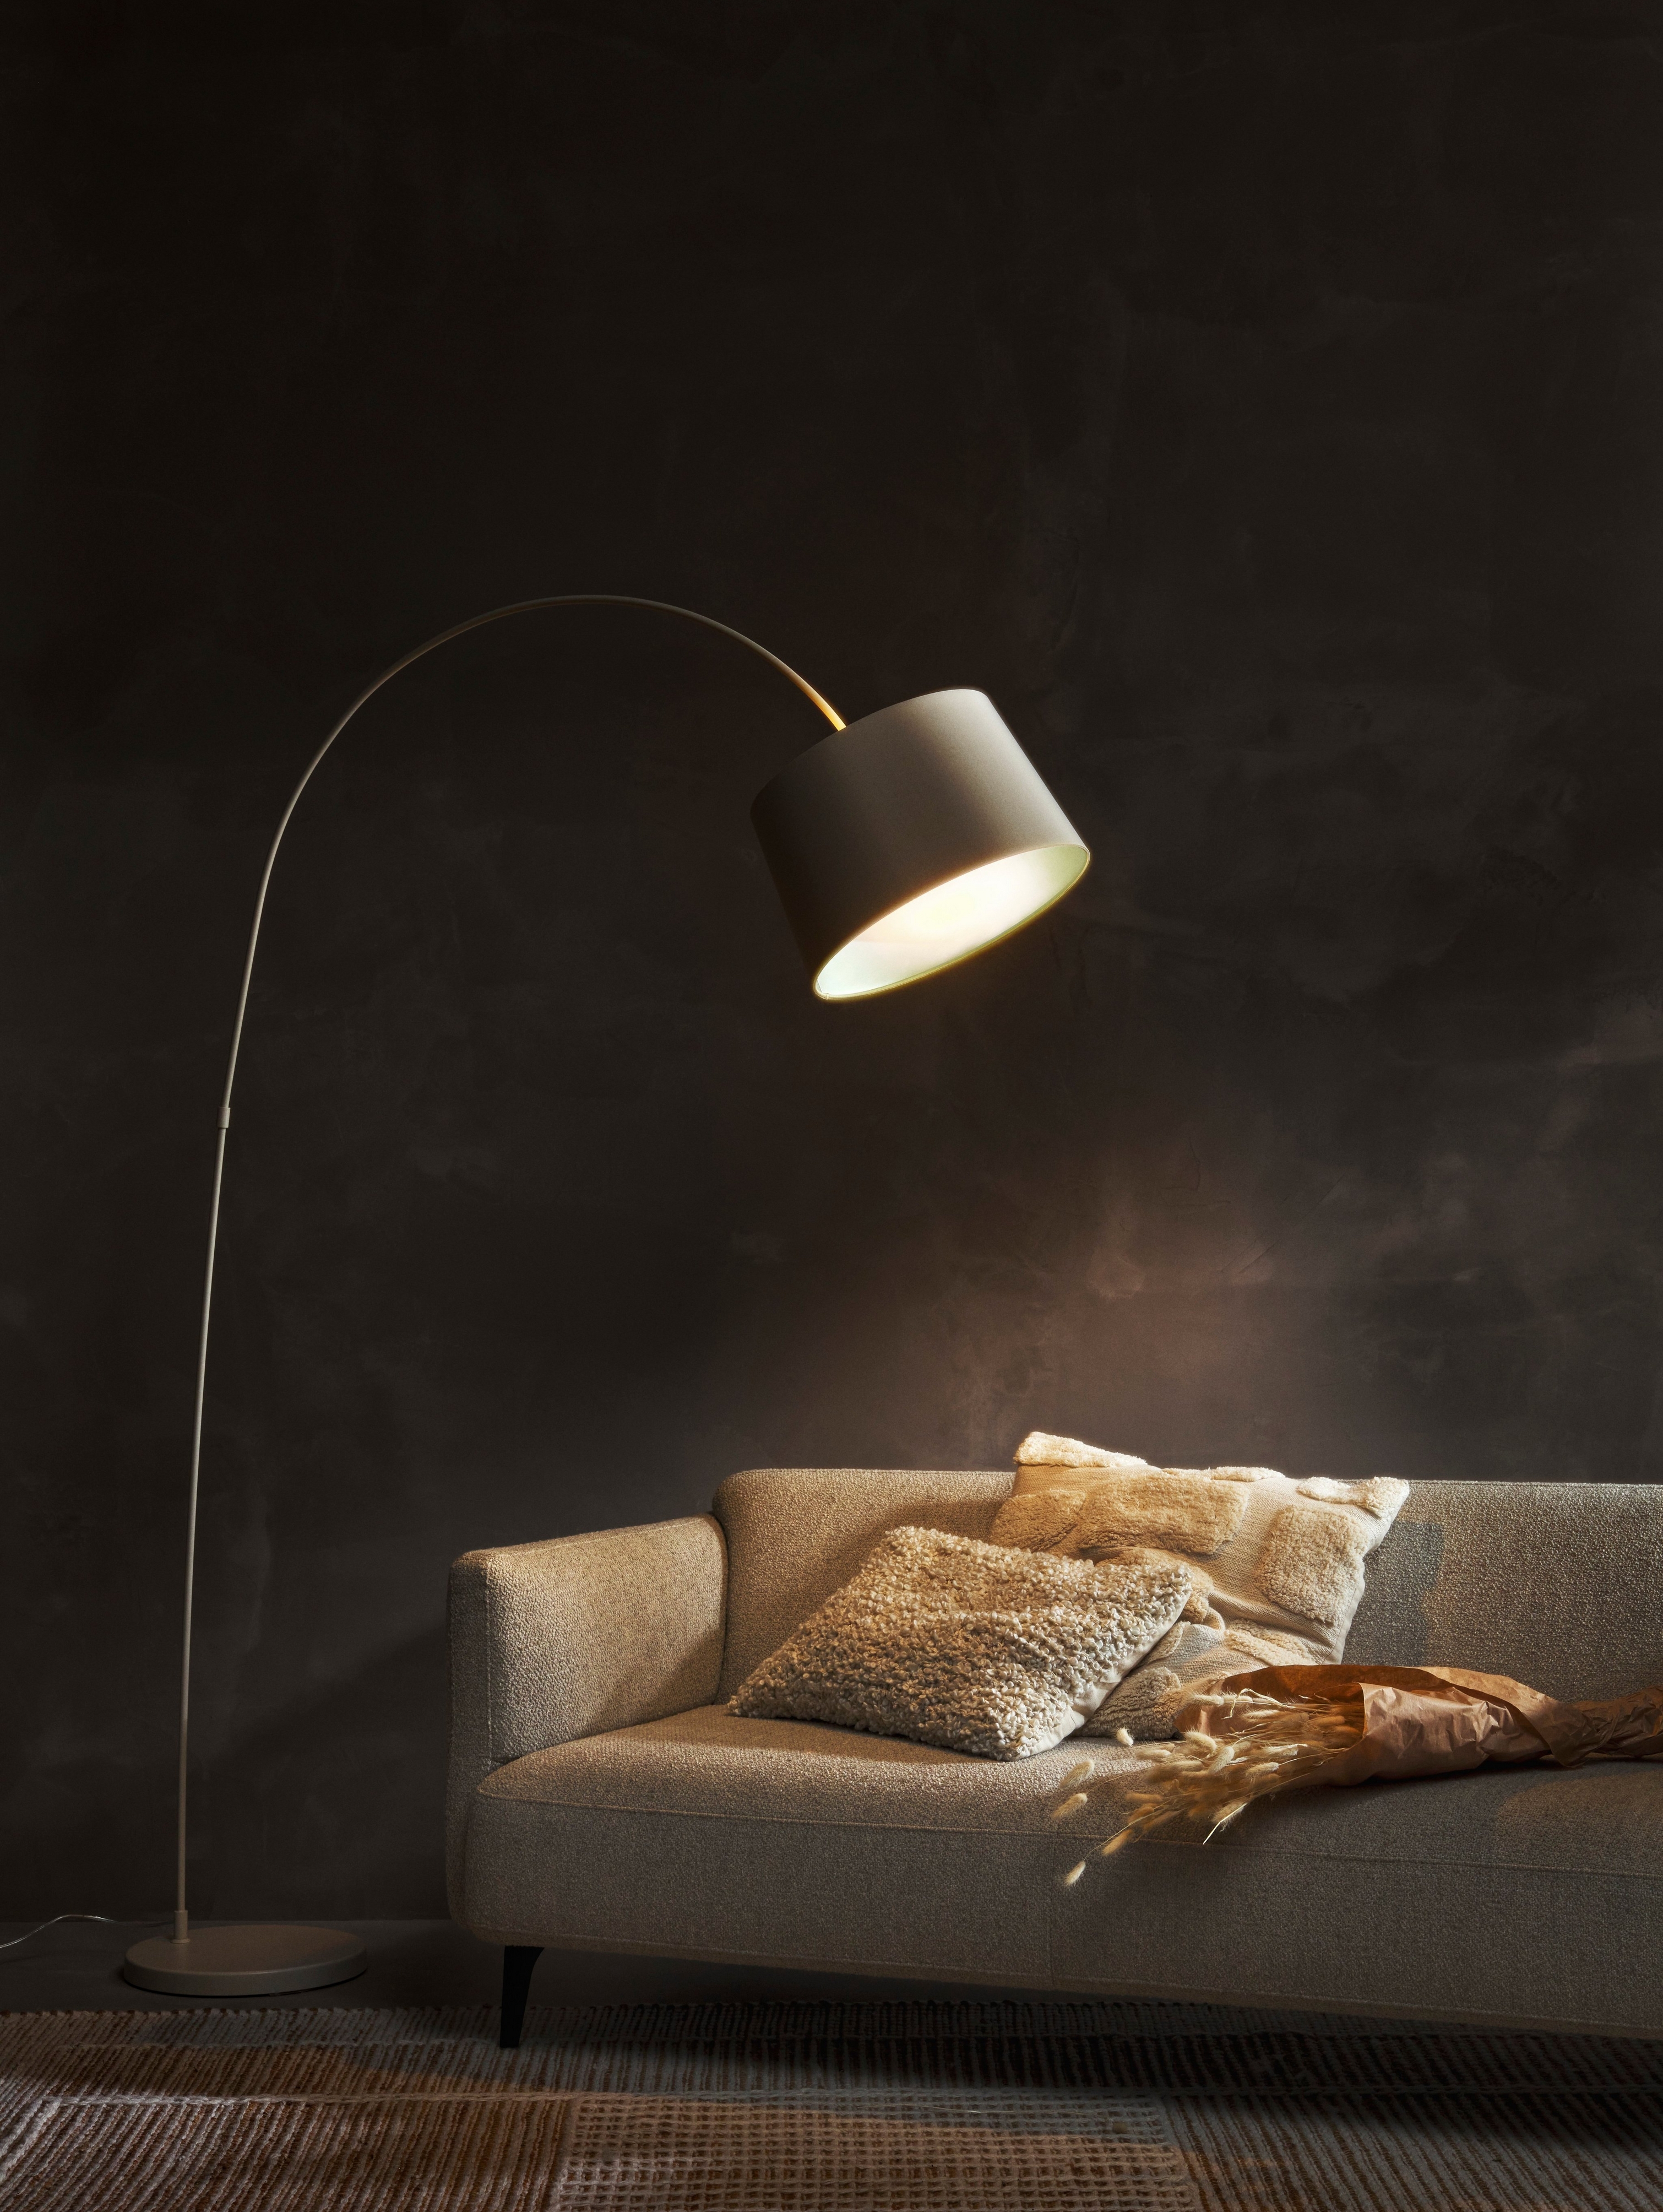 Kuta Stehlampe, die ein graues Modena Sofa mit Kissen und einem dunklen Wandhintergrund beleuchtet.